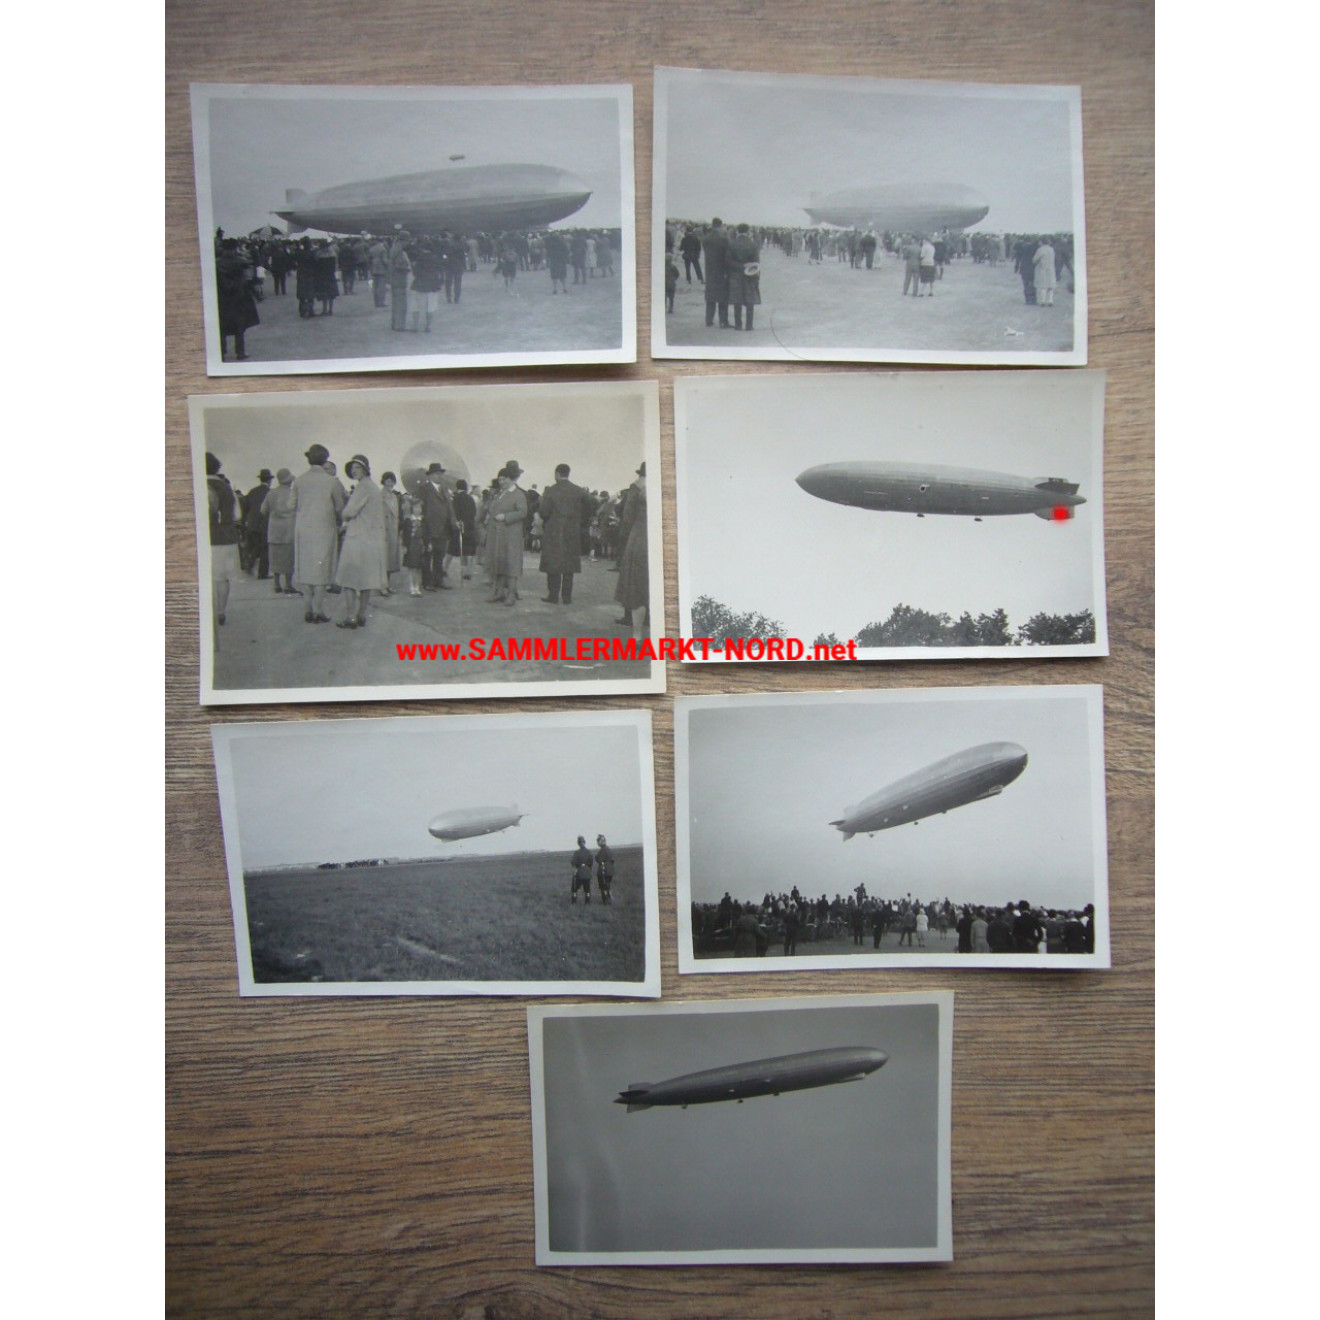 7 x Foto Zeppeline LZ 127 und LZ 129 bei Flugveranstaltung